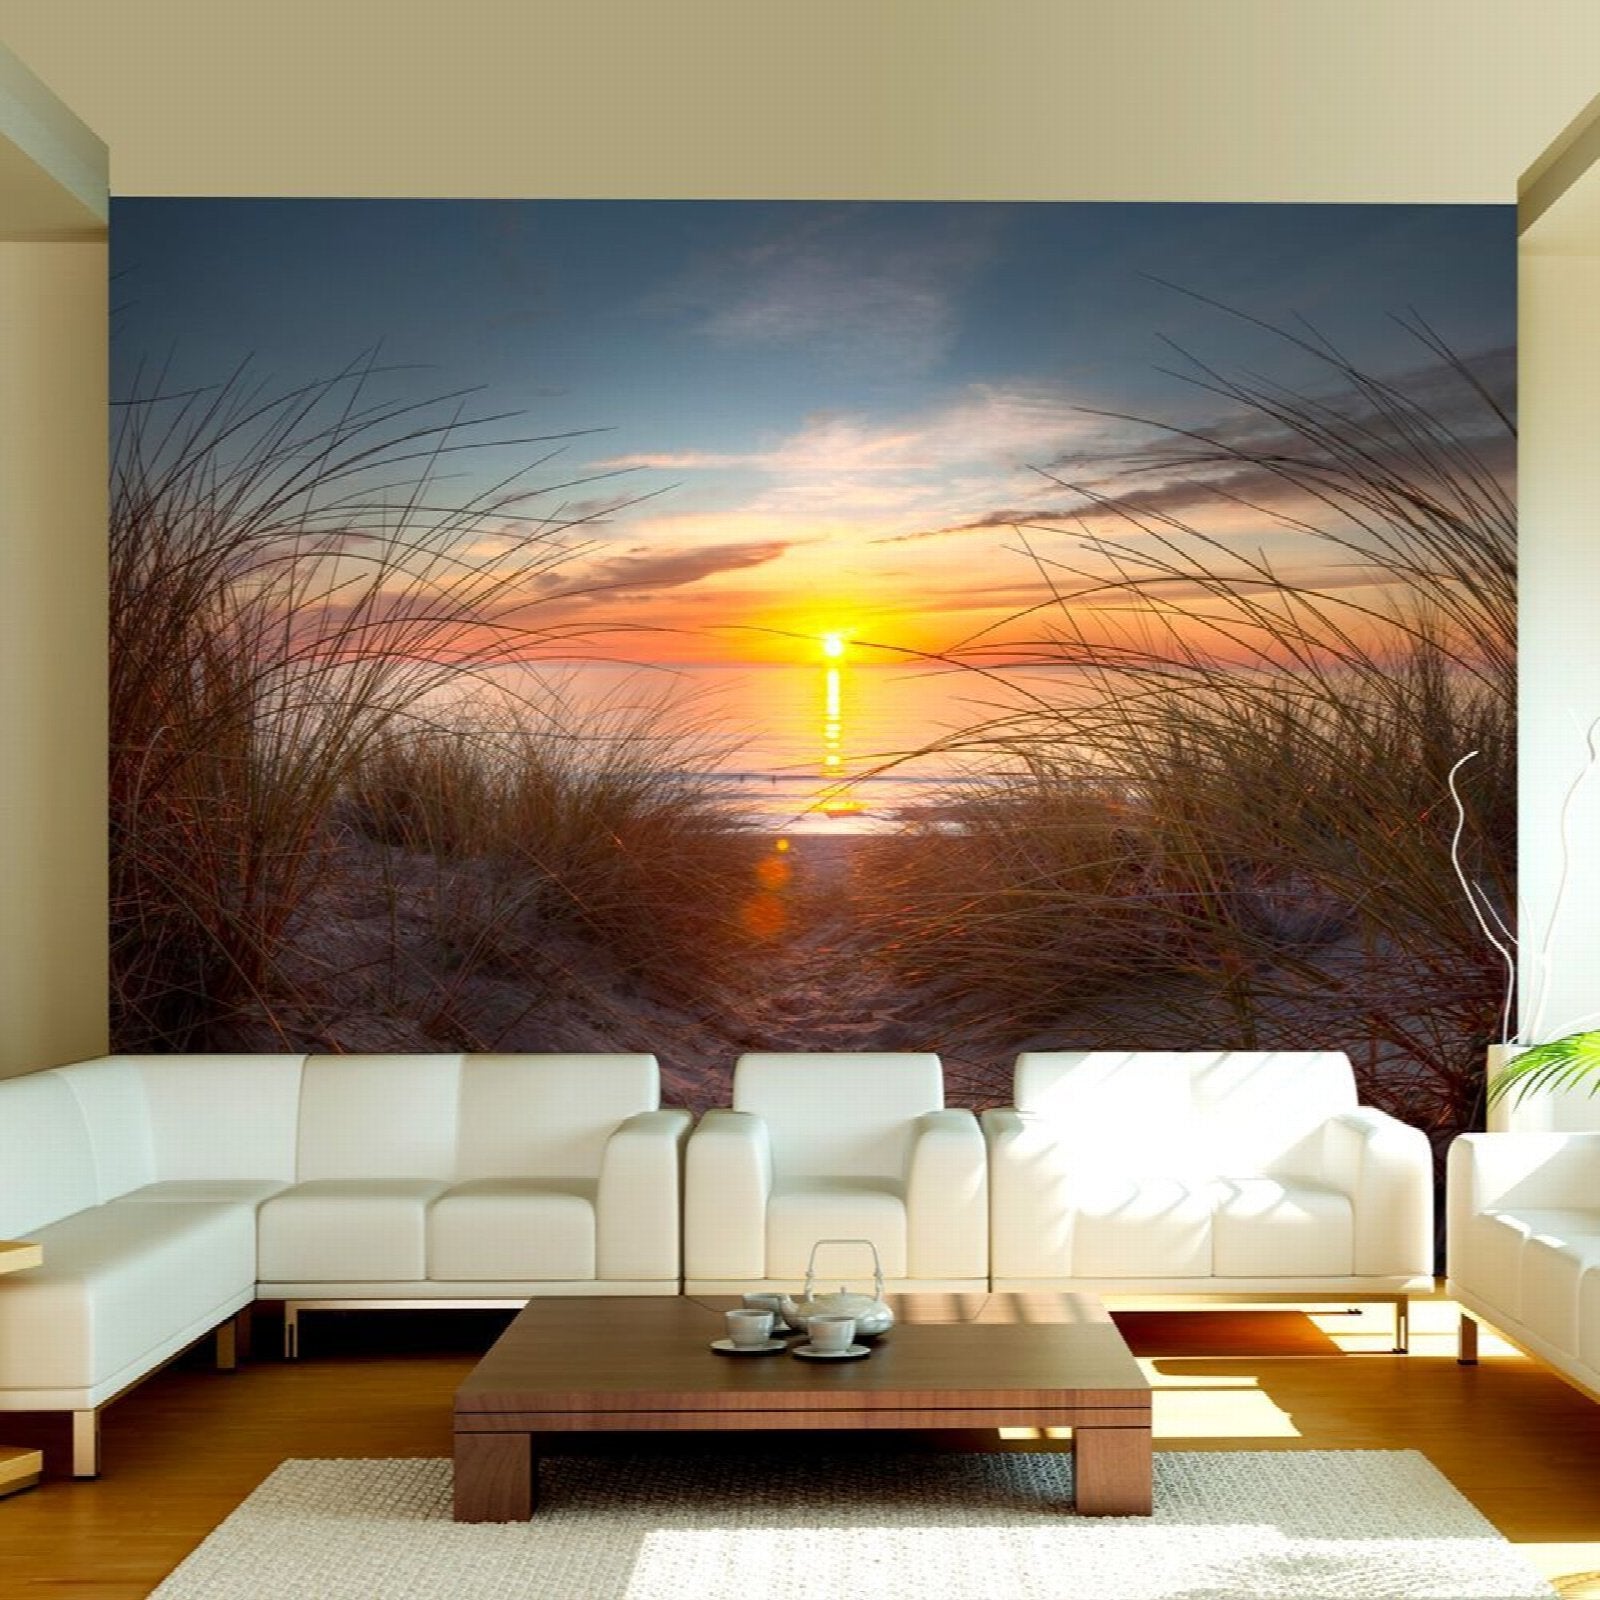 Papier peint photo Papier Peint Image facile installer Fleece Ocean Coast au coucher du soleil 13350